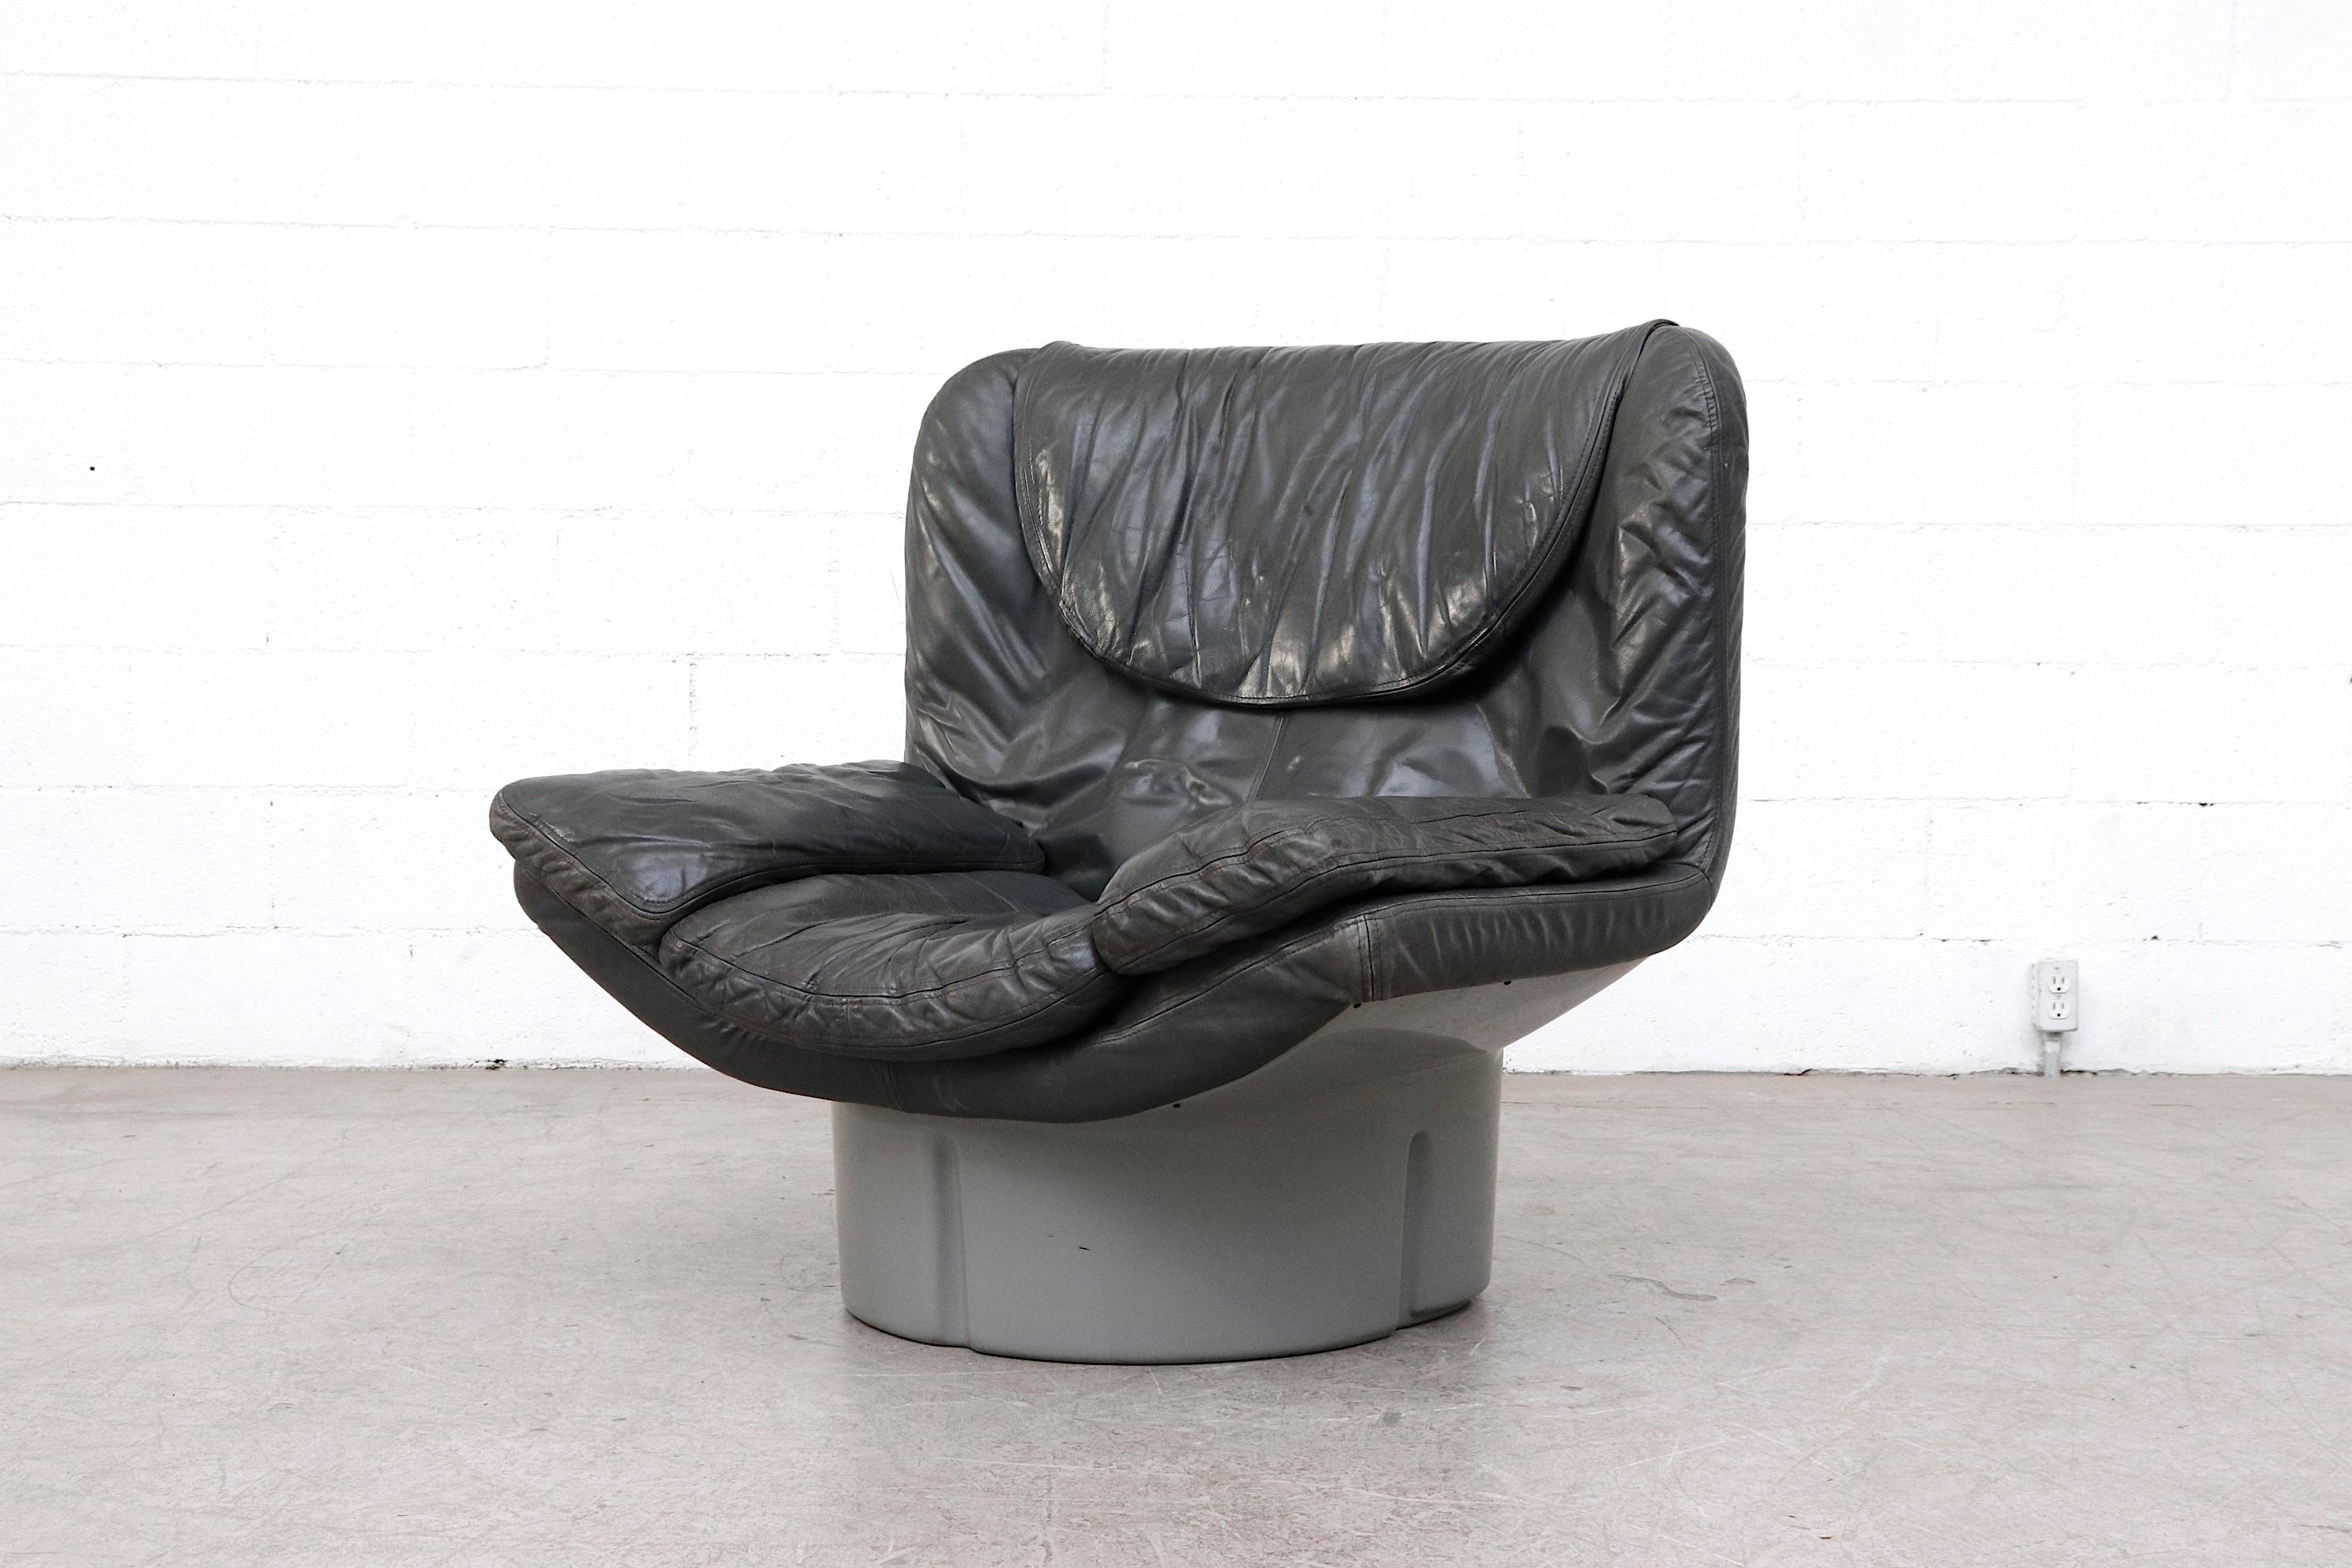 Lounge-Sessel Il Poltrone aus der Serie i Potoni 175, entworfen von T. Ammannati und G.P. Vitelli. Dunkelgraues Leder mit stahlgrauem, geformtem Acrylfuß. Wunderbar bequeme Liege aus schwarzem Leder. Einige sichtbare Farbe verblassen und Patina auf